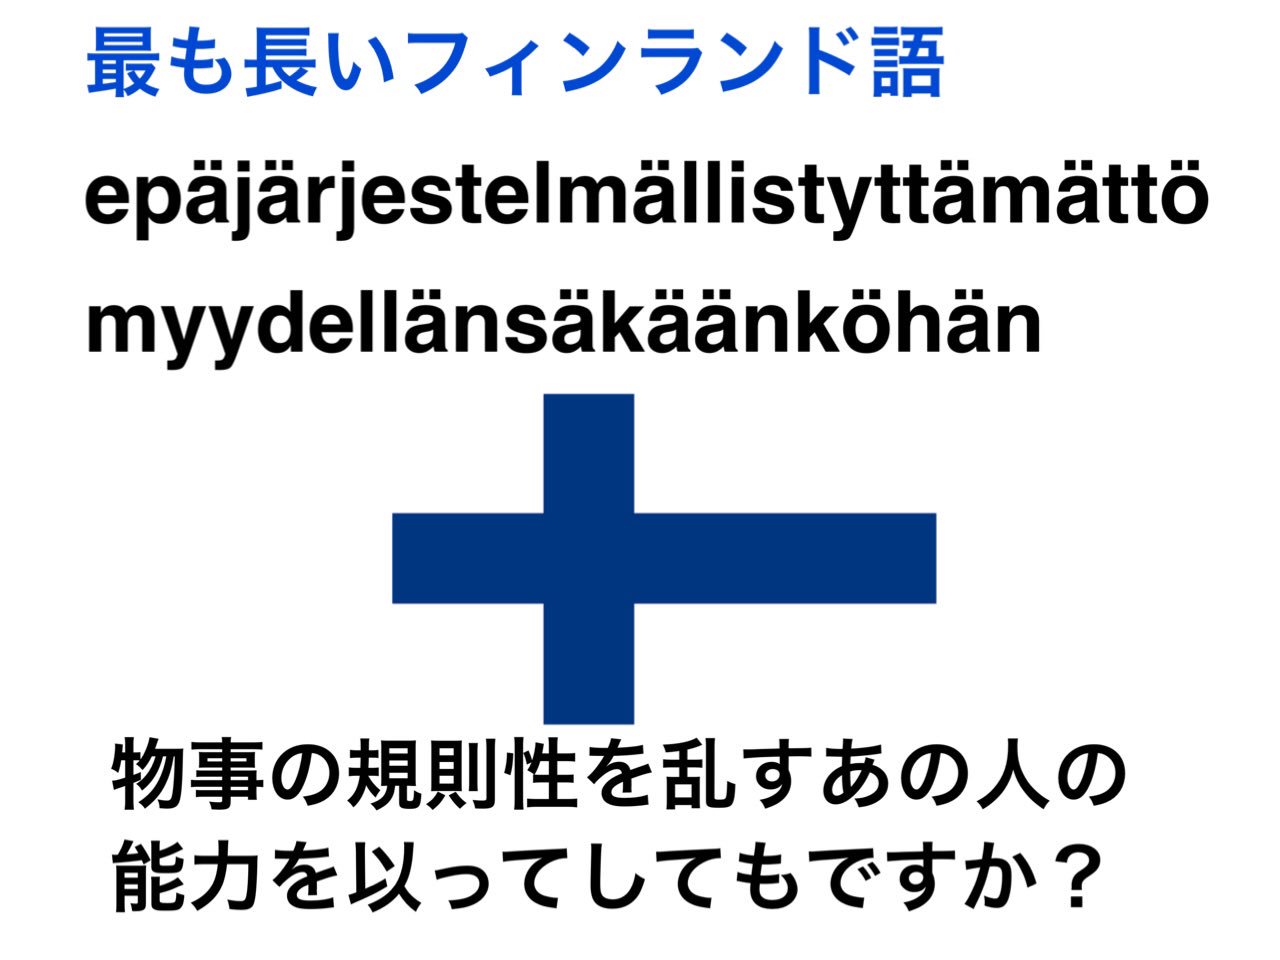 週末北欧部 フィンランド語で一番長い単語はepajarjestelmallistyttamattomyydellansakaankohan えぱやるいぇすてるまっりすてゅったまっとみゅーでっらーんさかーんこはん いつ使うねんw T Co Mo1klmpi32 Twitter